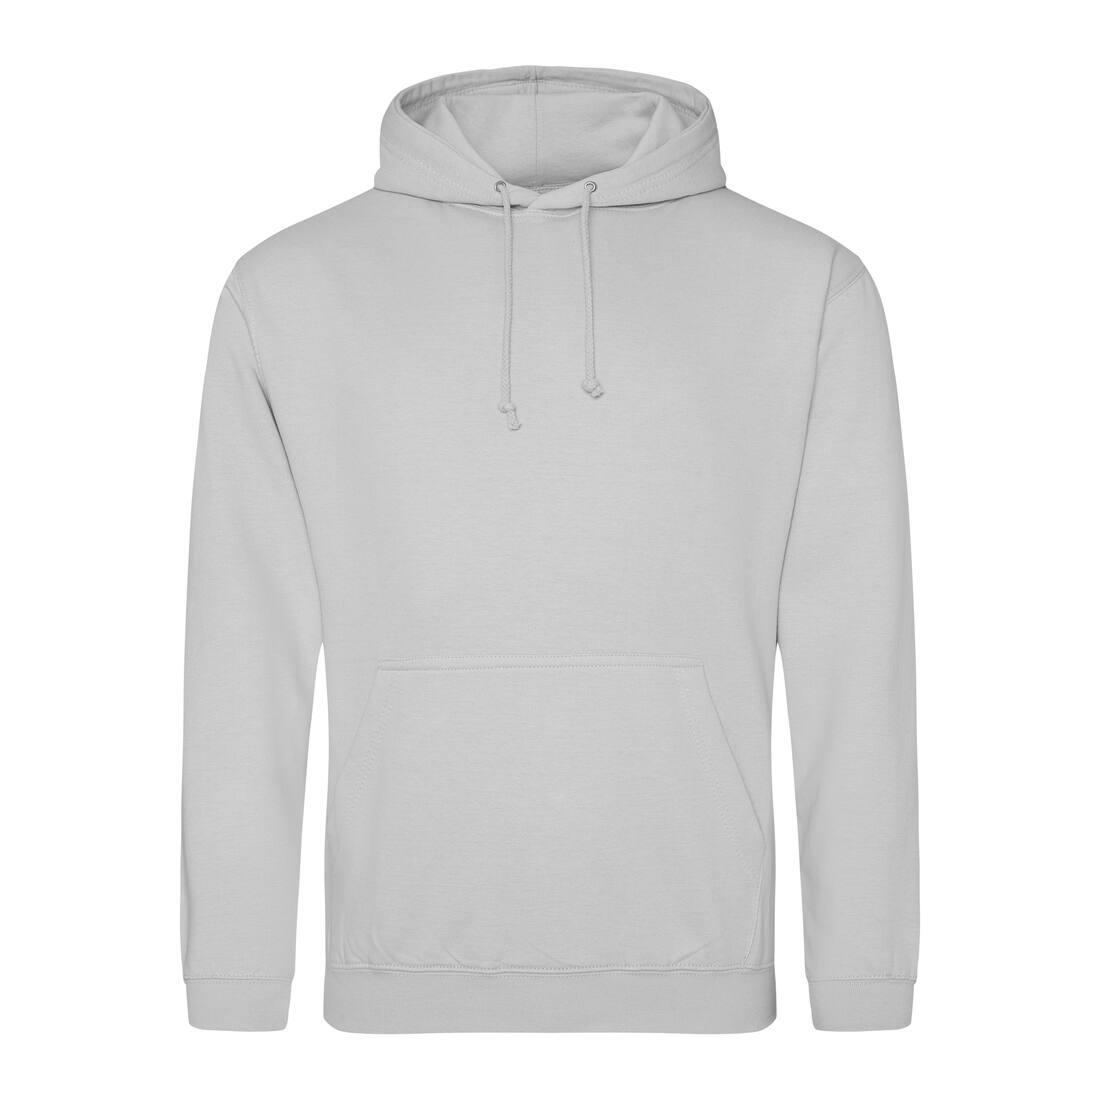 Heren hoodie moondust grey perfect voor bedrukking van logo, tekst, foto